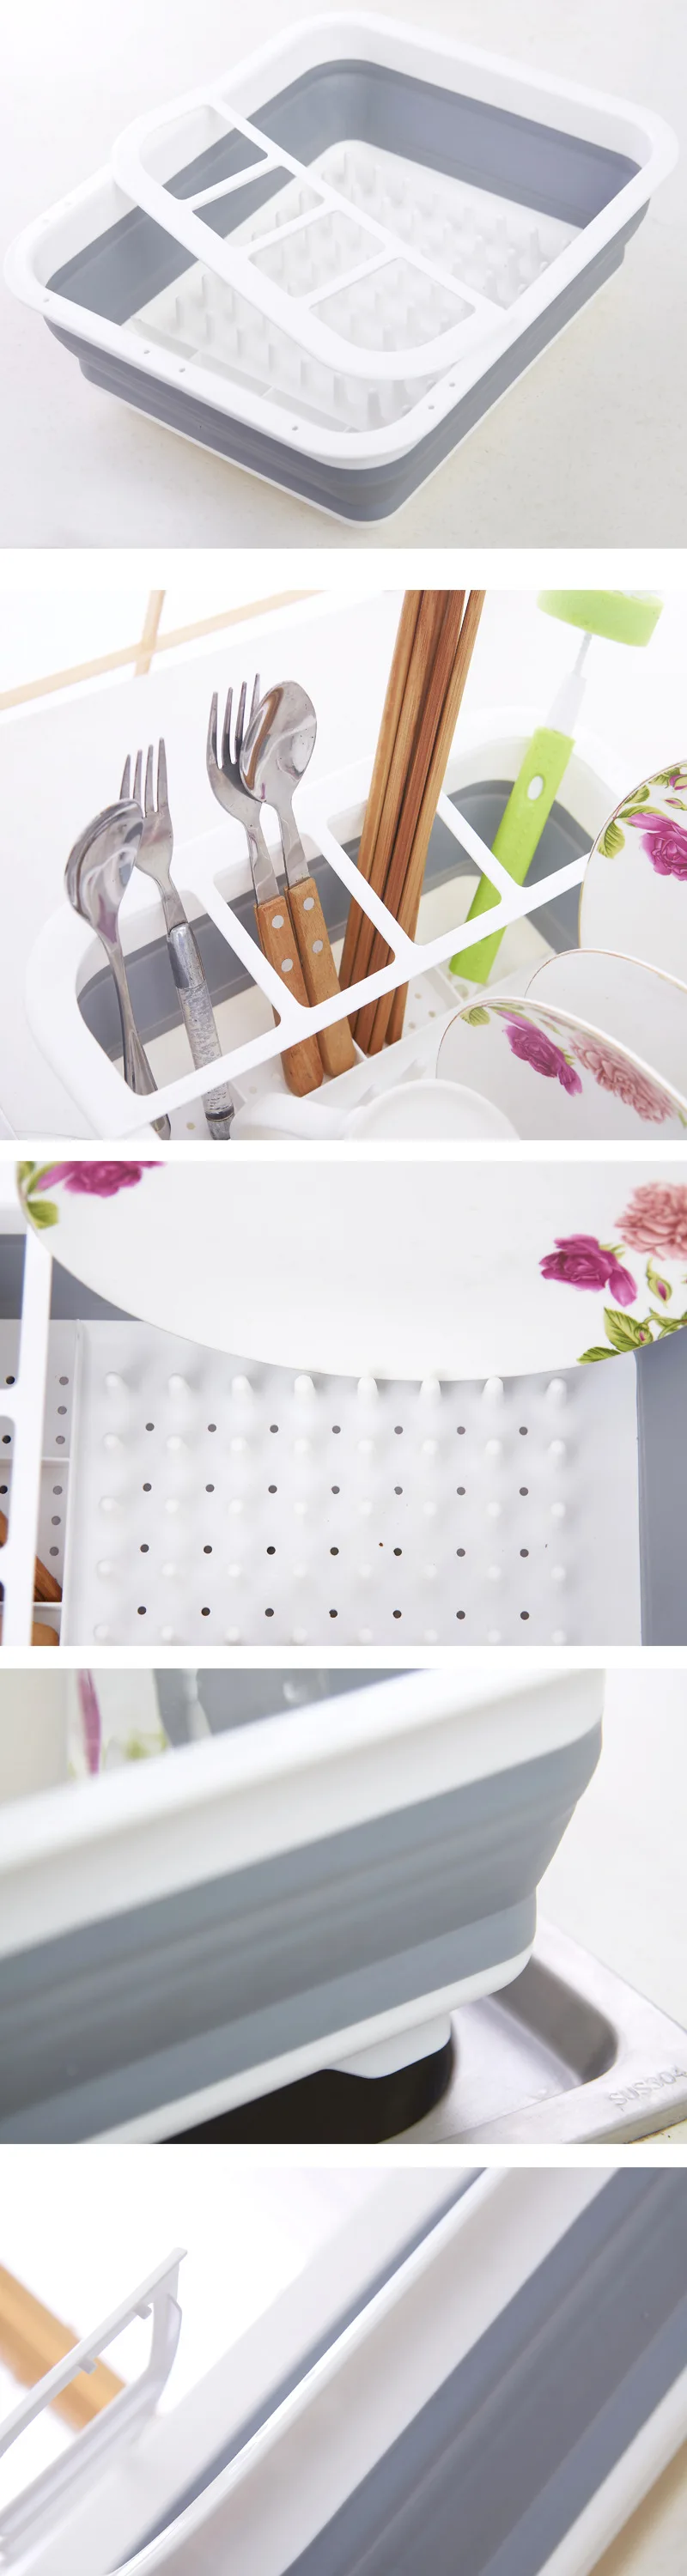 Складная подставка для посуды кухонная стойка для посуды многоцелевой ящик для хранения столовых приборов Портативный складной Блюдо стойка-сушилка подстаканник